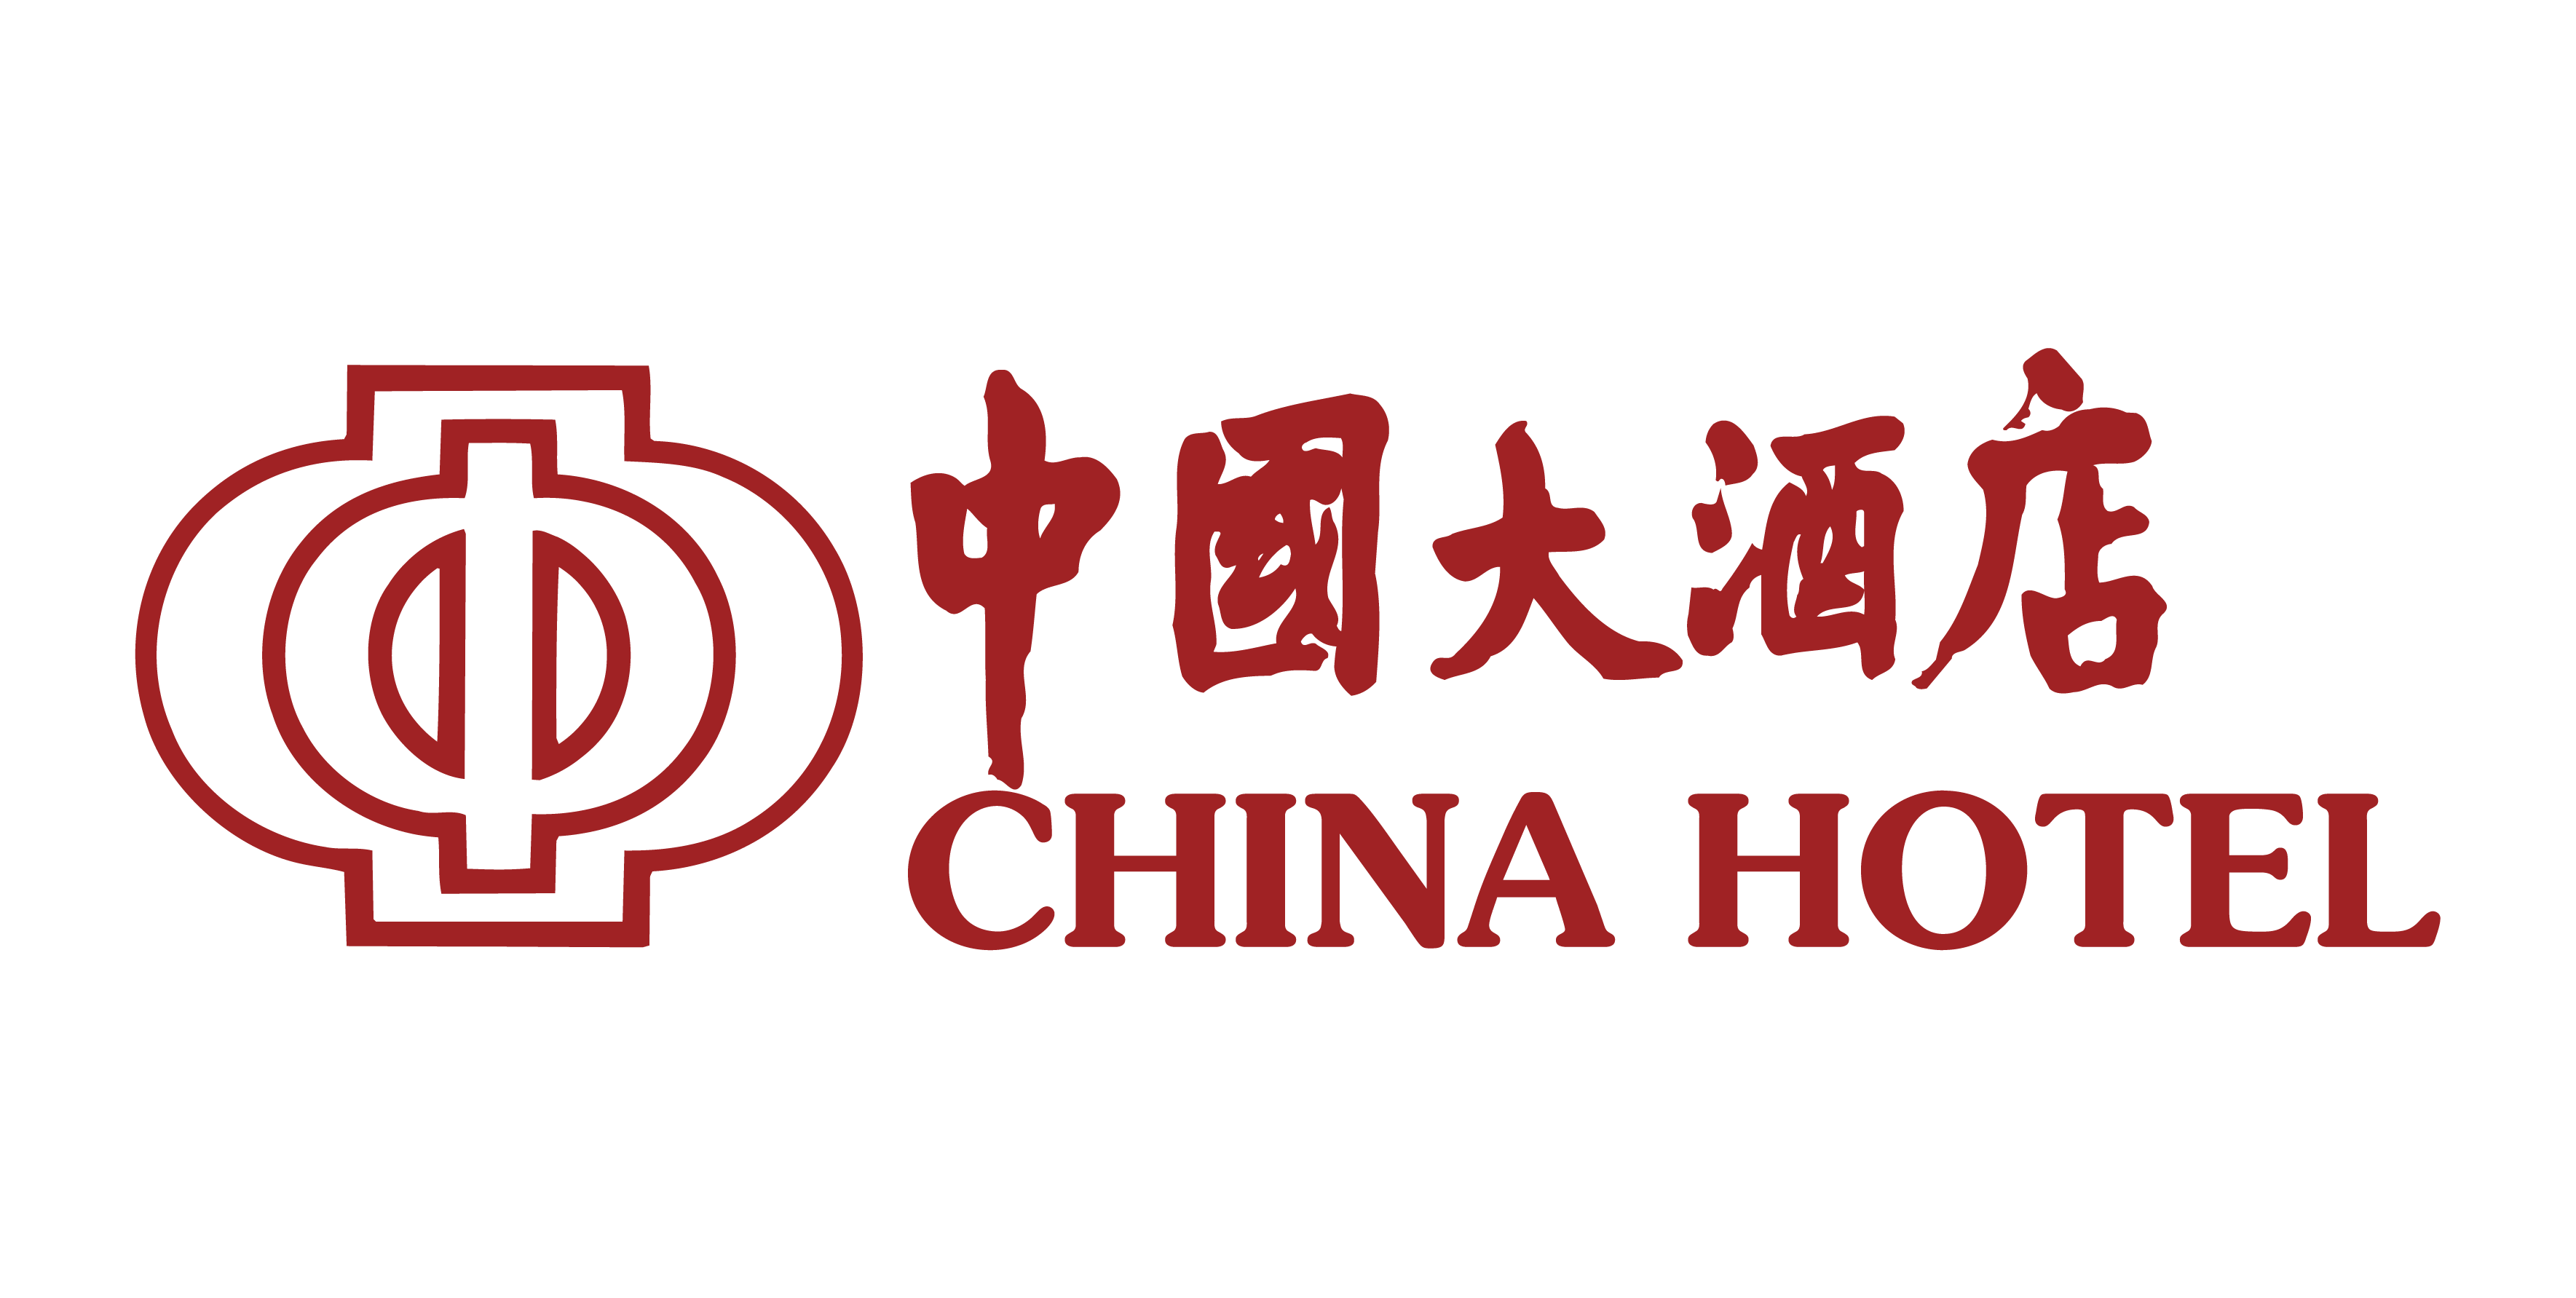 China Hotel,Guangzhou